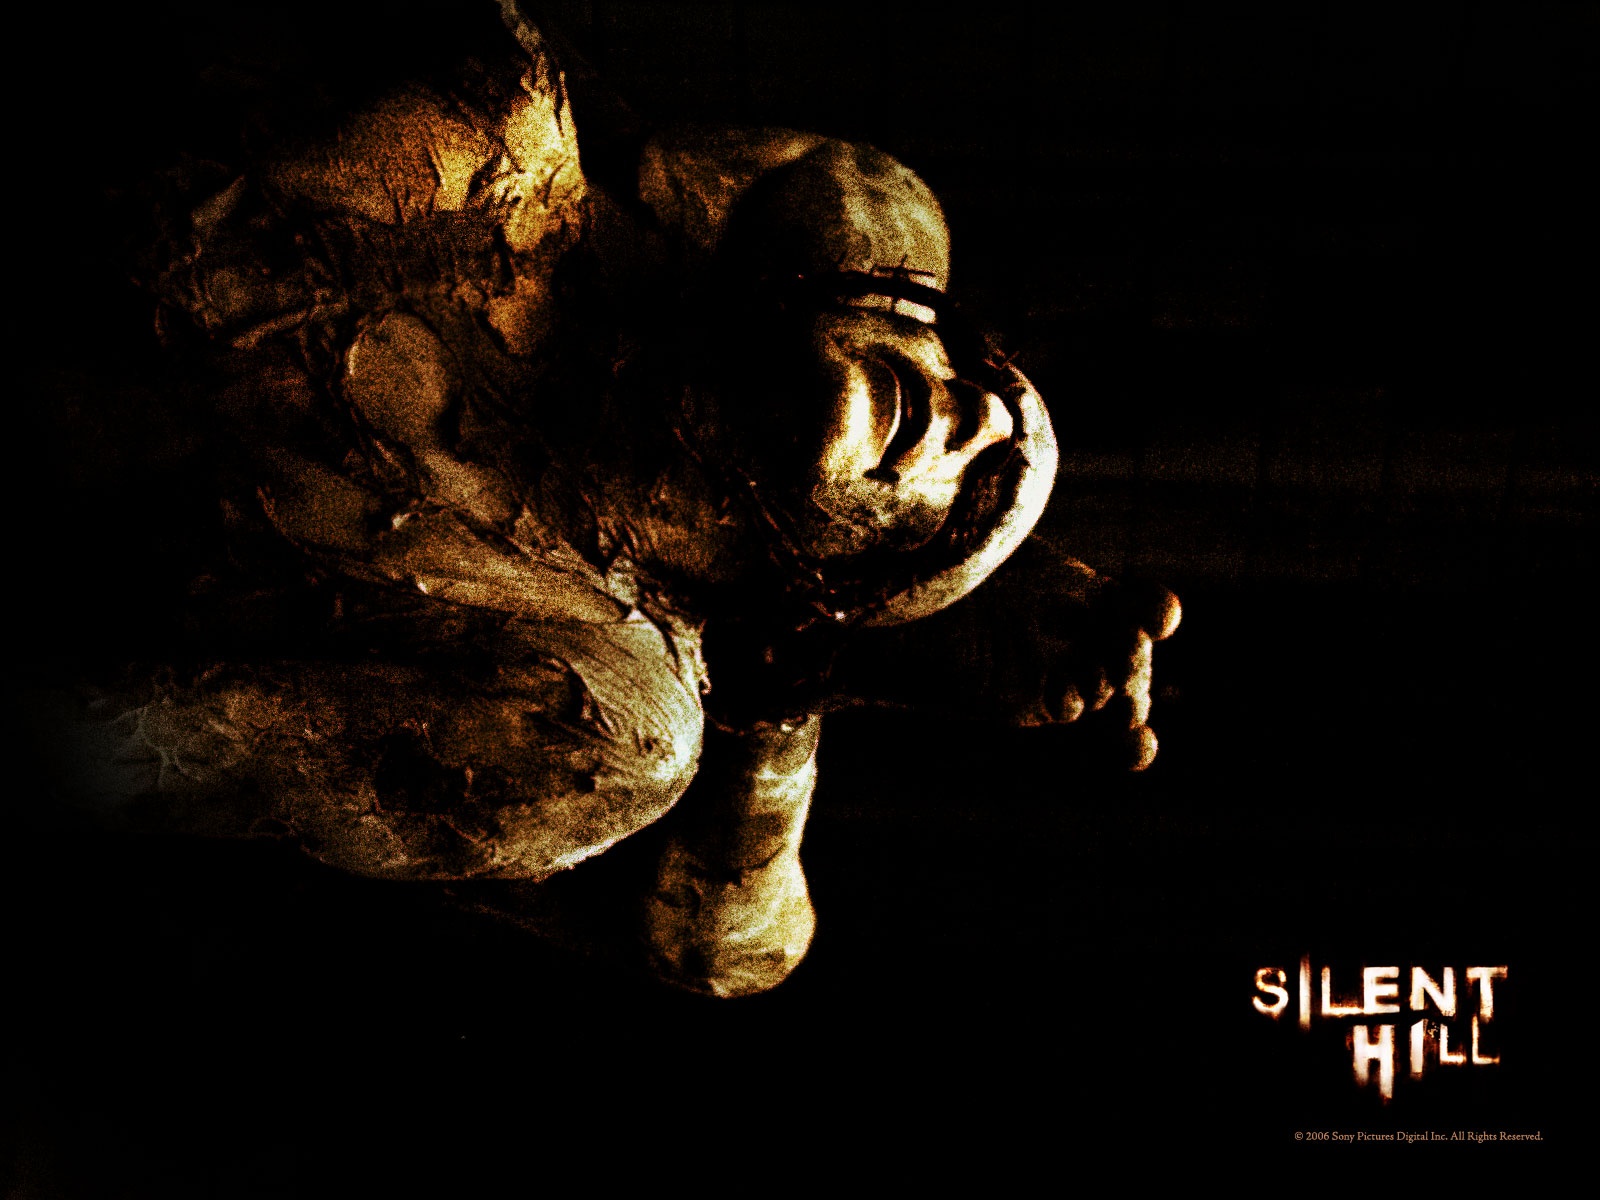 Silent Hill nonsense wallpaper. Silent Hill nonsense